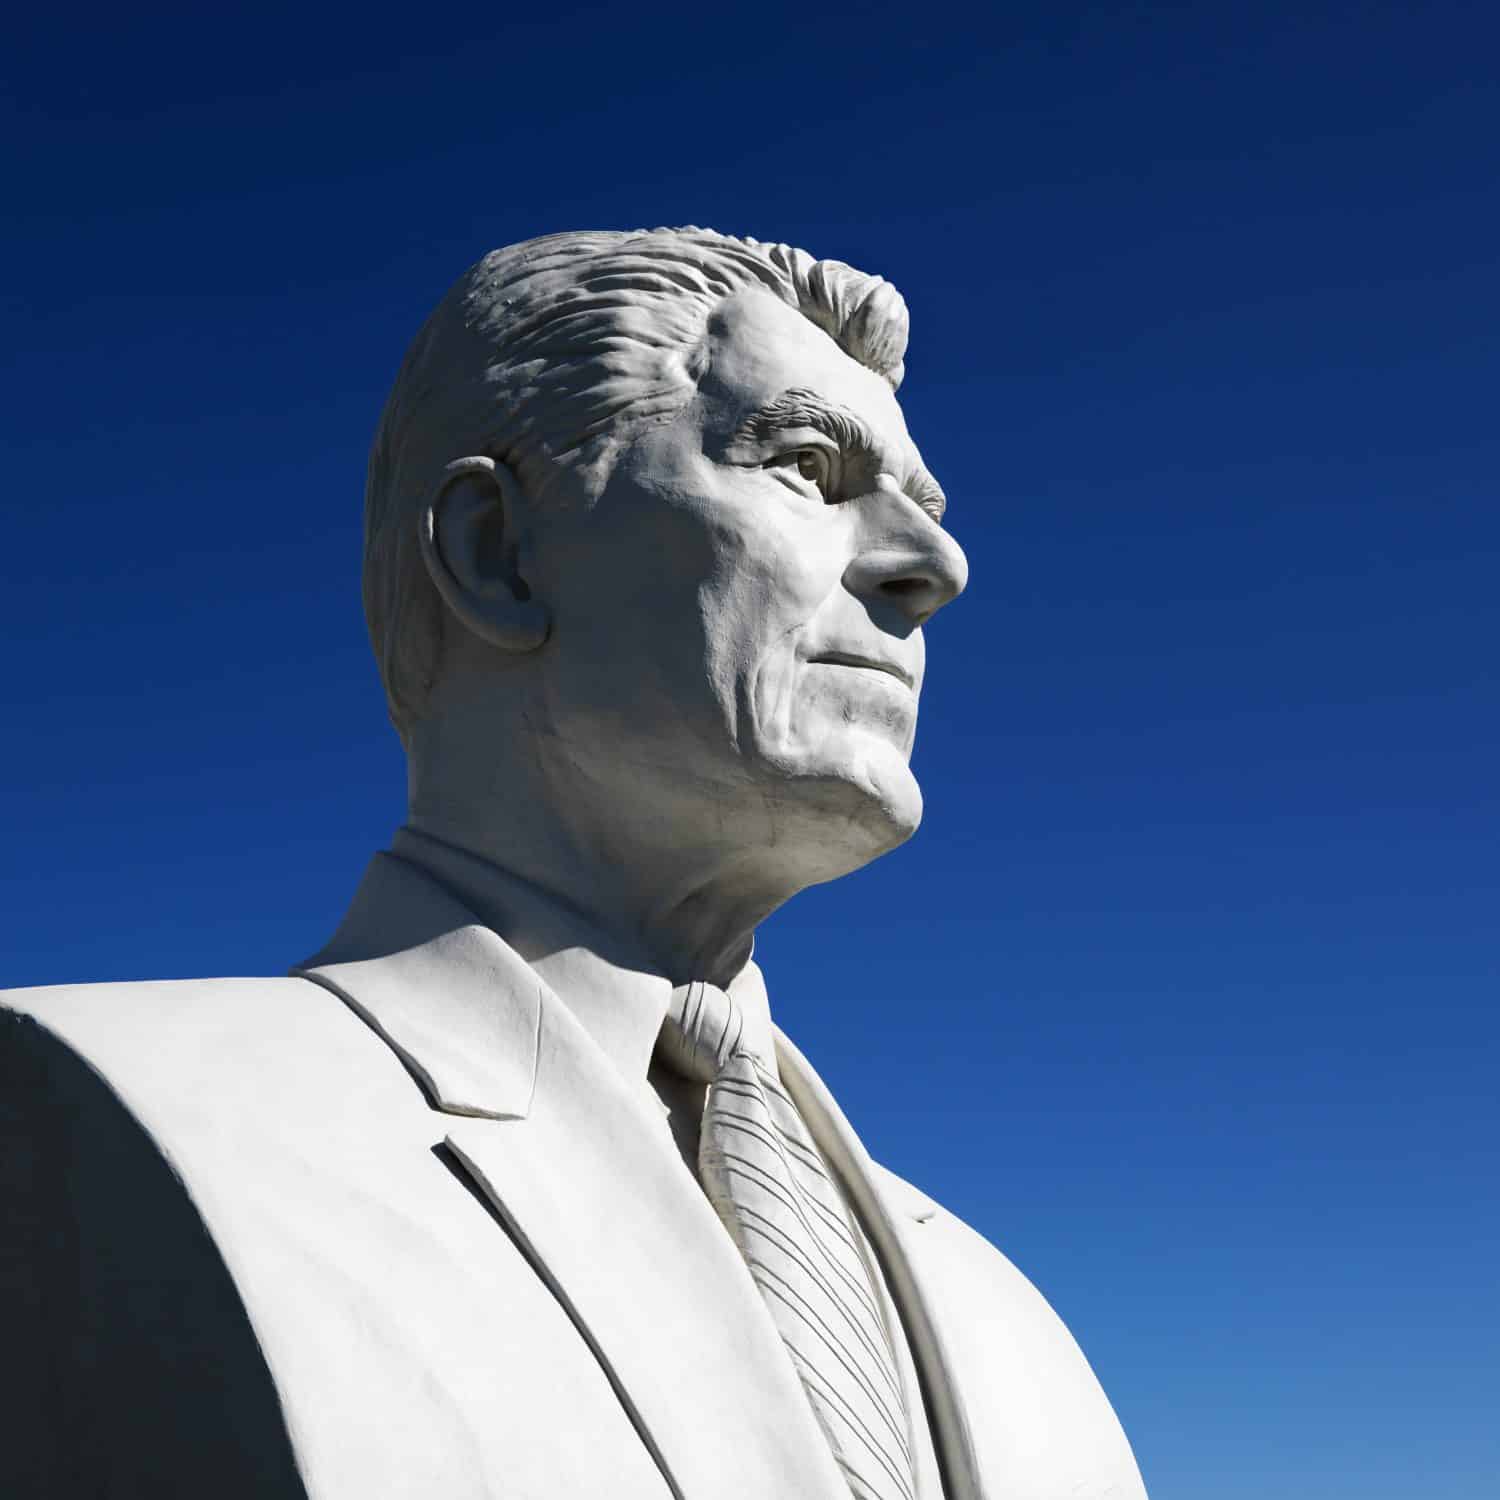 Busto della scultura di Ronald Reagan contro il cielo blu nel President's Park, Black Hills, South Dakota.